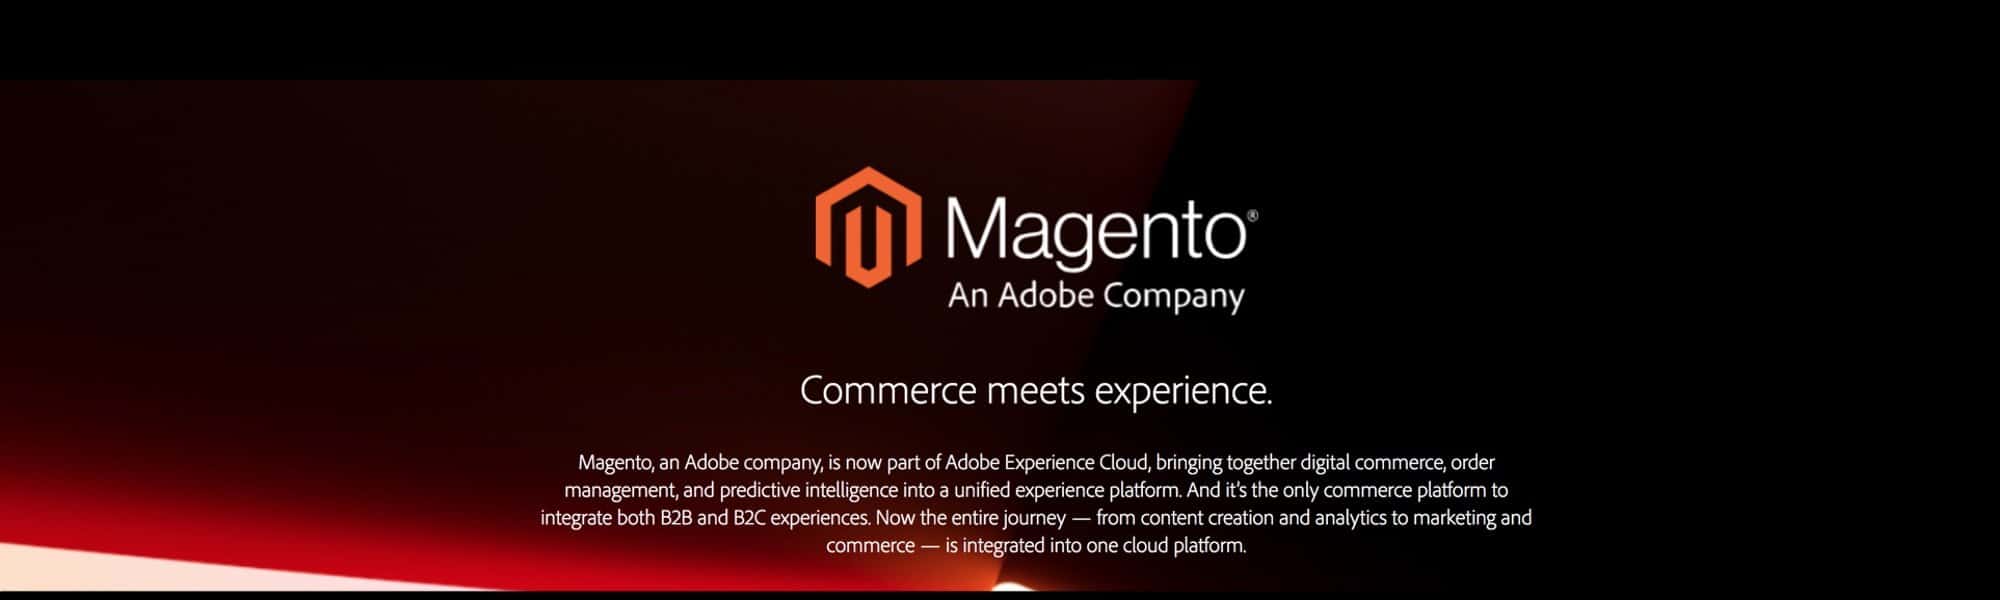 Adobe compra Magento: consecuencias y futuro de la plataforma ecommerce B2B y B2C líder